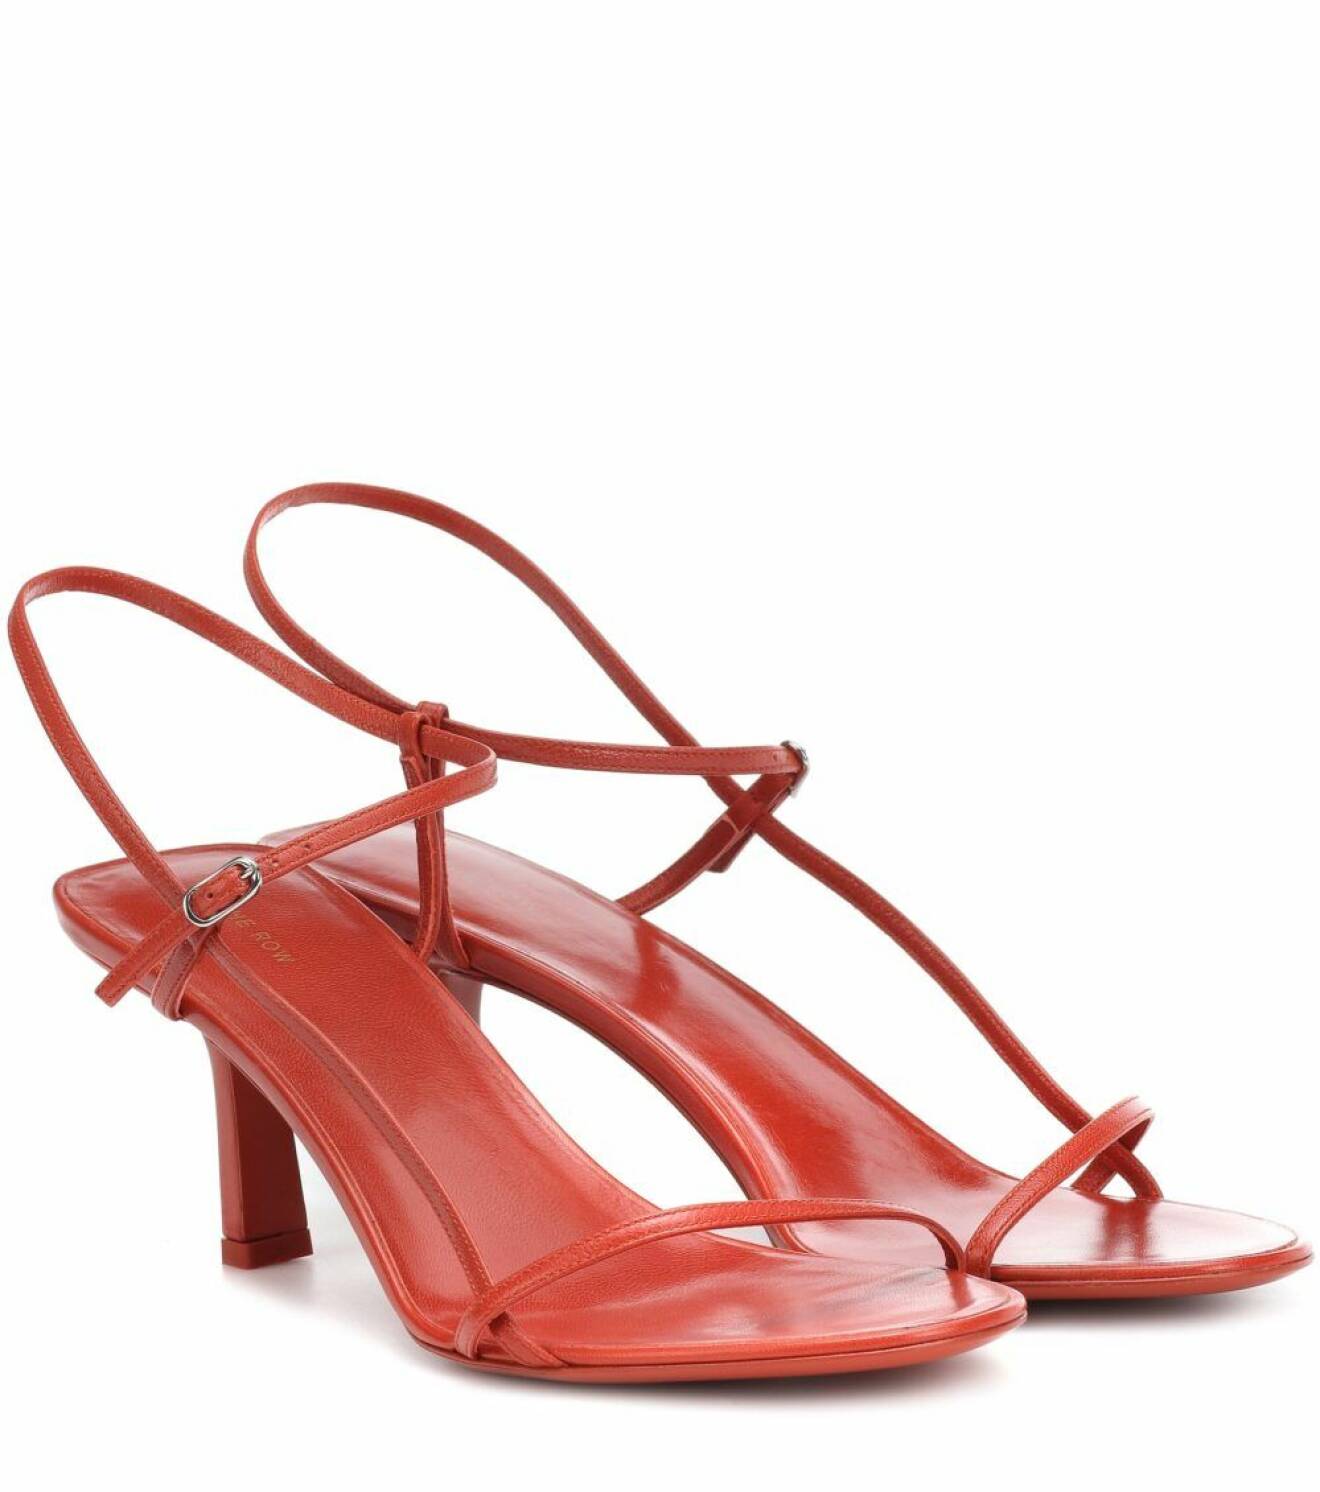 Röda sandaletter från det coola designermärket The Row. Här kan du shoppa skon!